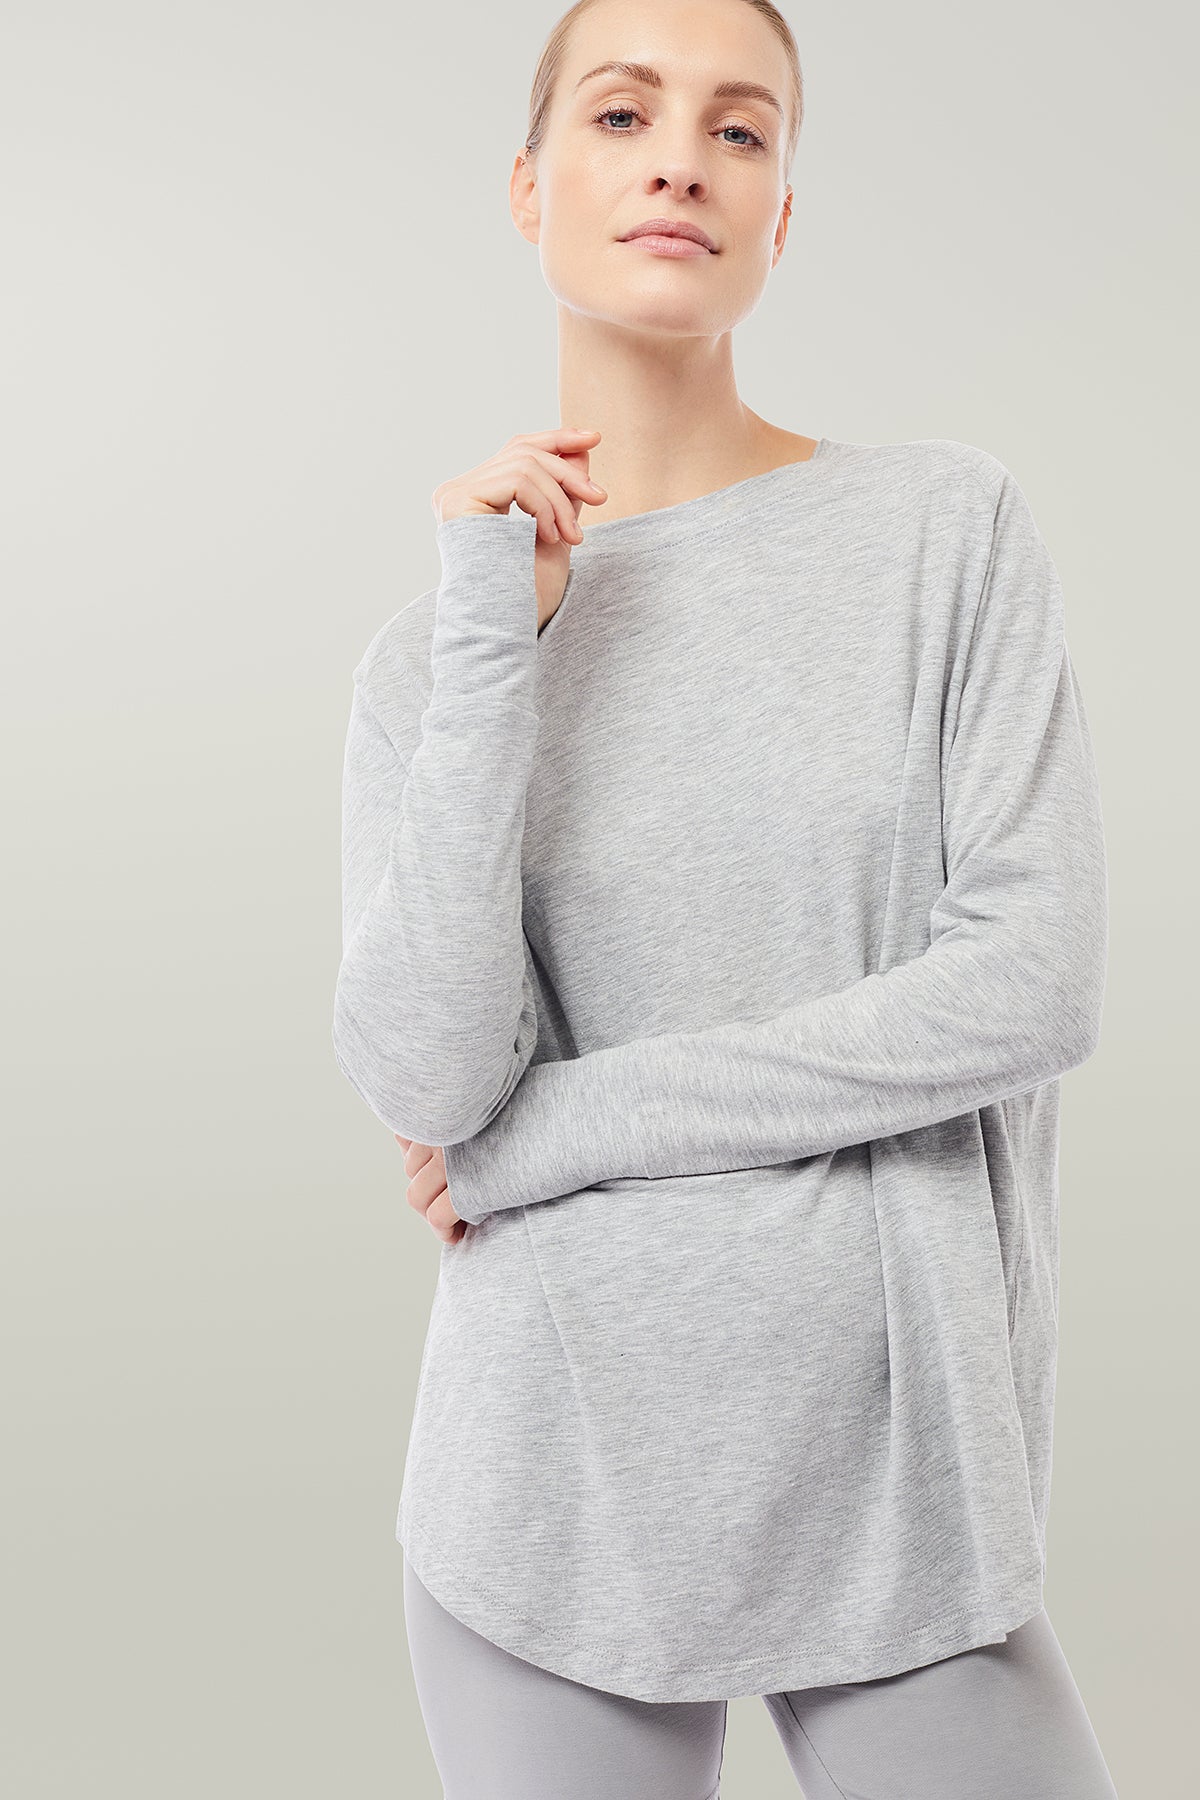 Mandala Yoga Shirt Grau Front - Active Long Sleeve